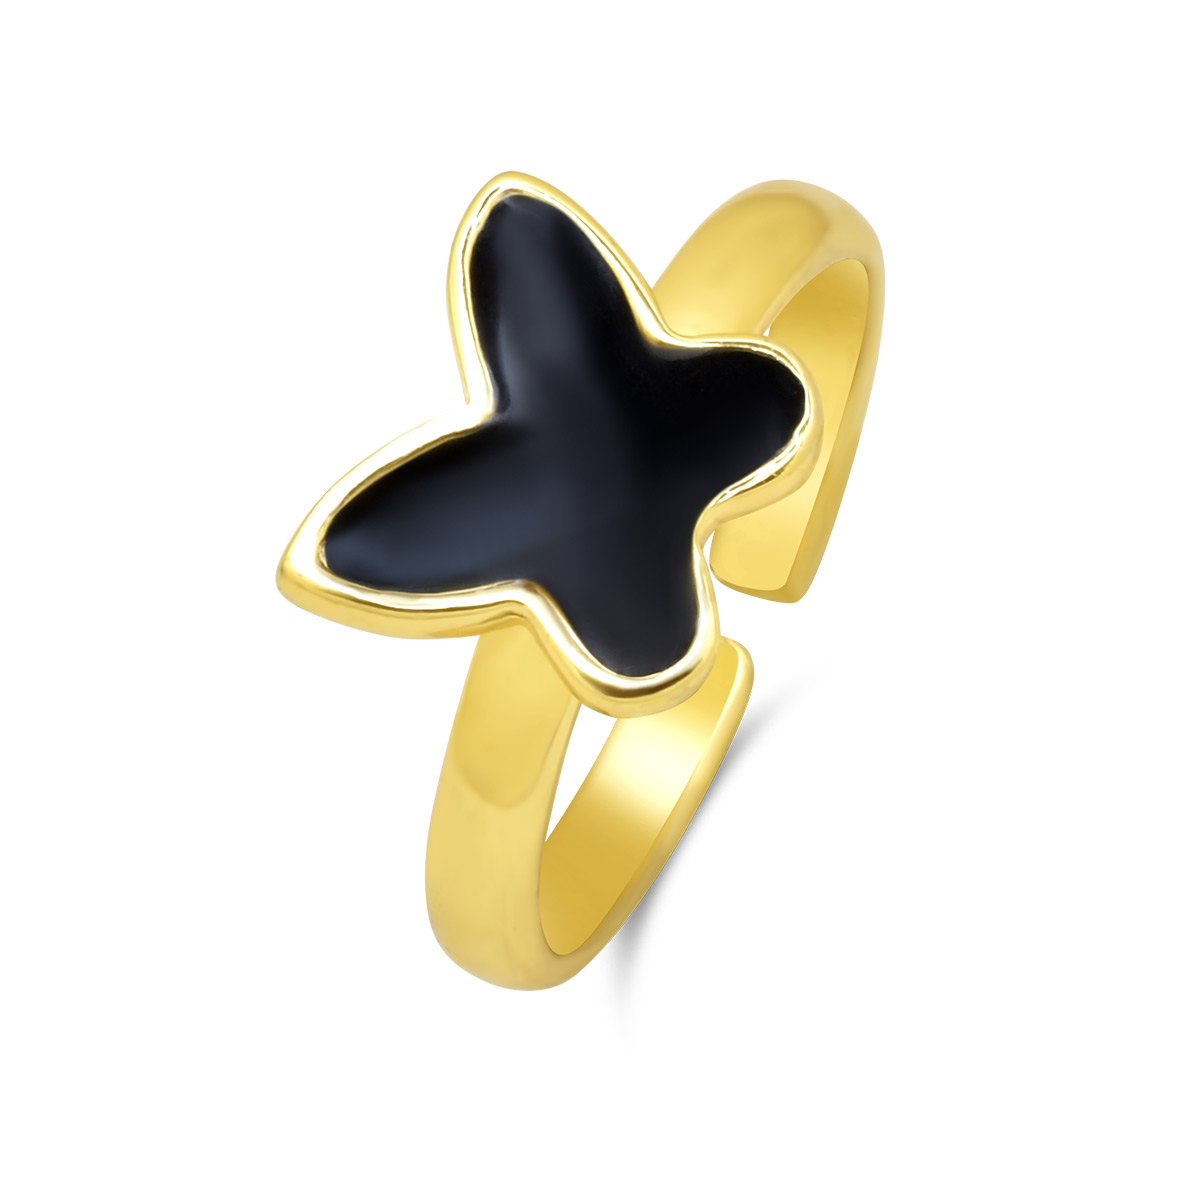 Ασημένιο επίχρυσο δαχτυλίδι 925 με πεταλούδα